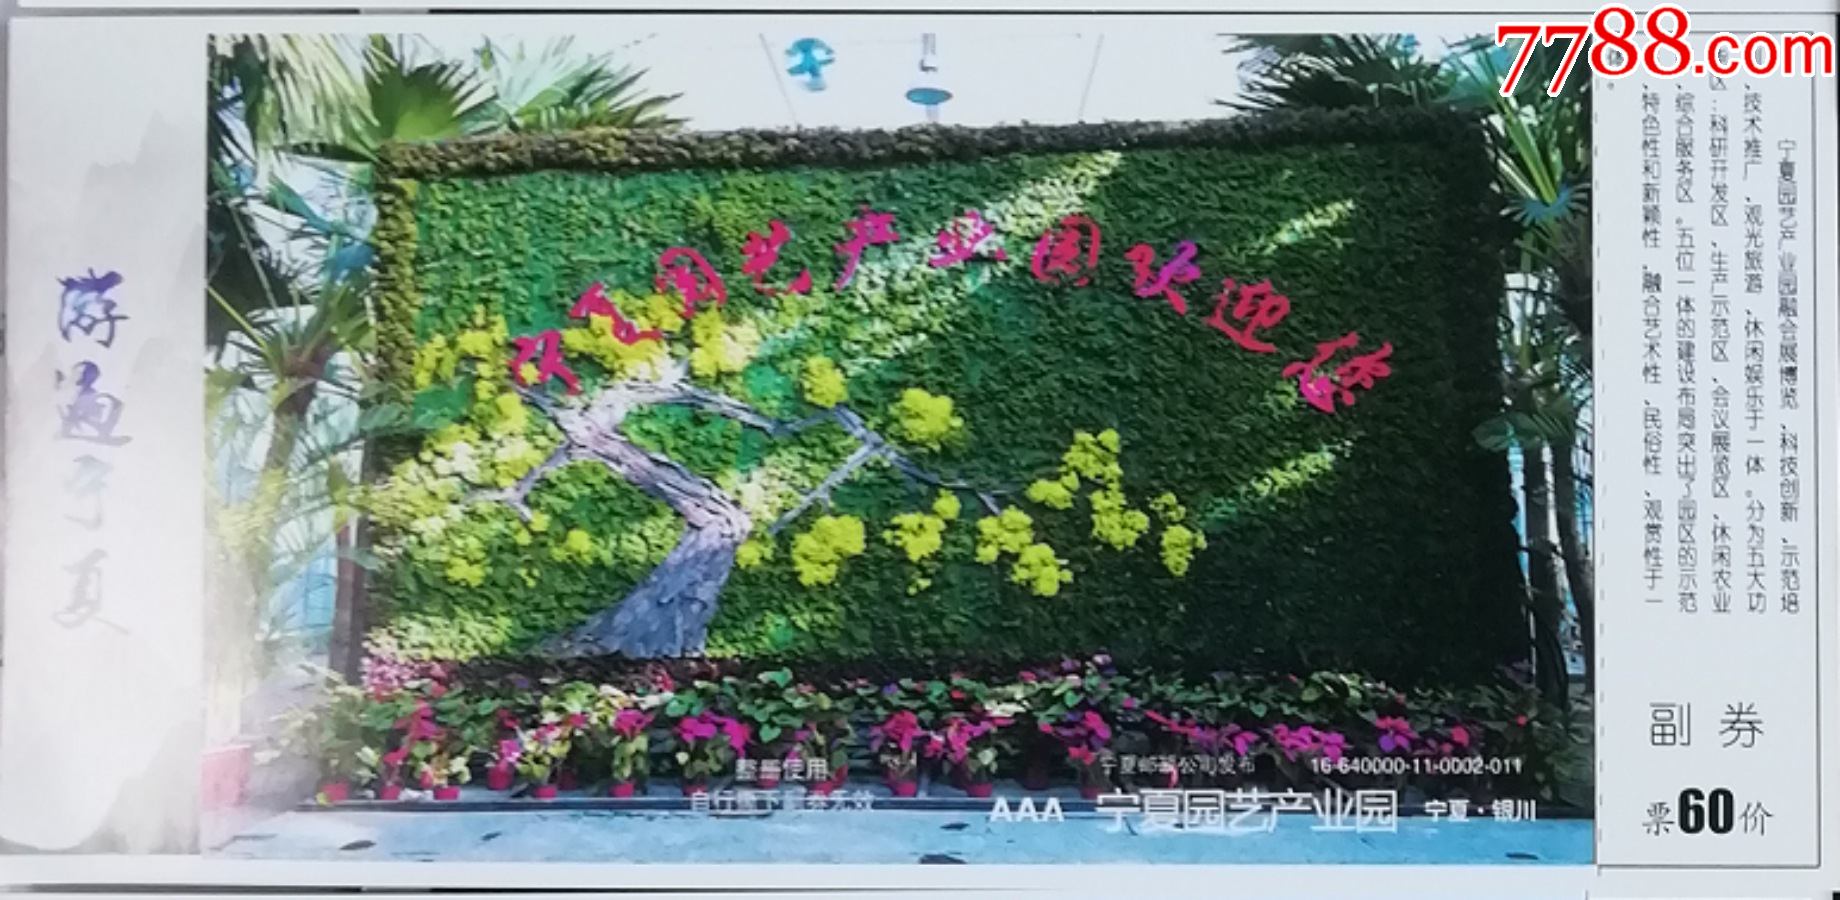 2019北京世界园艺博览会“宁夏日”活动在北京开幕-宁夏新闻网